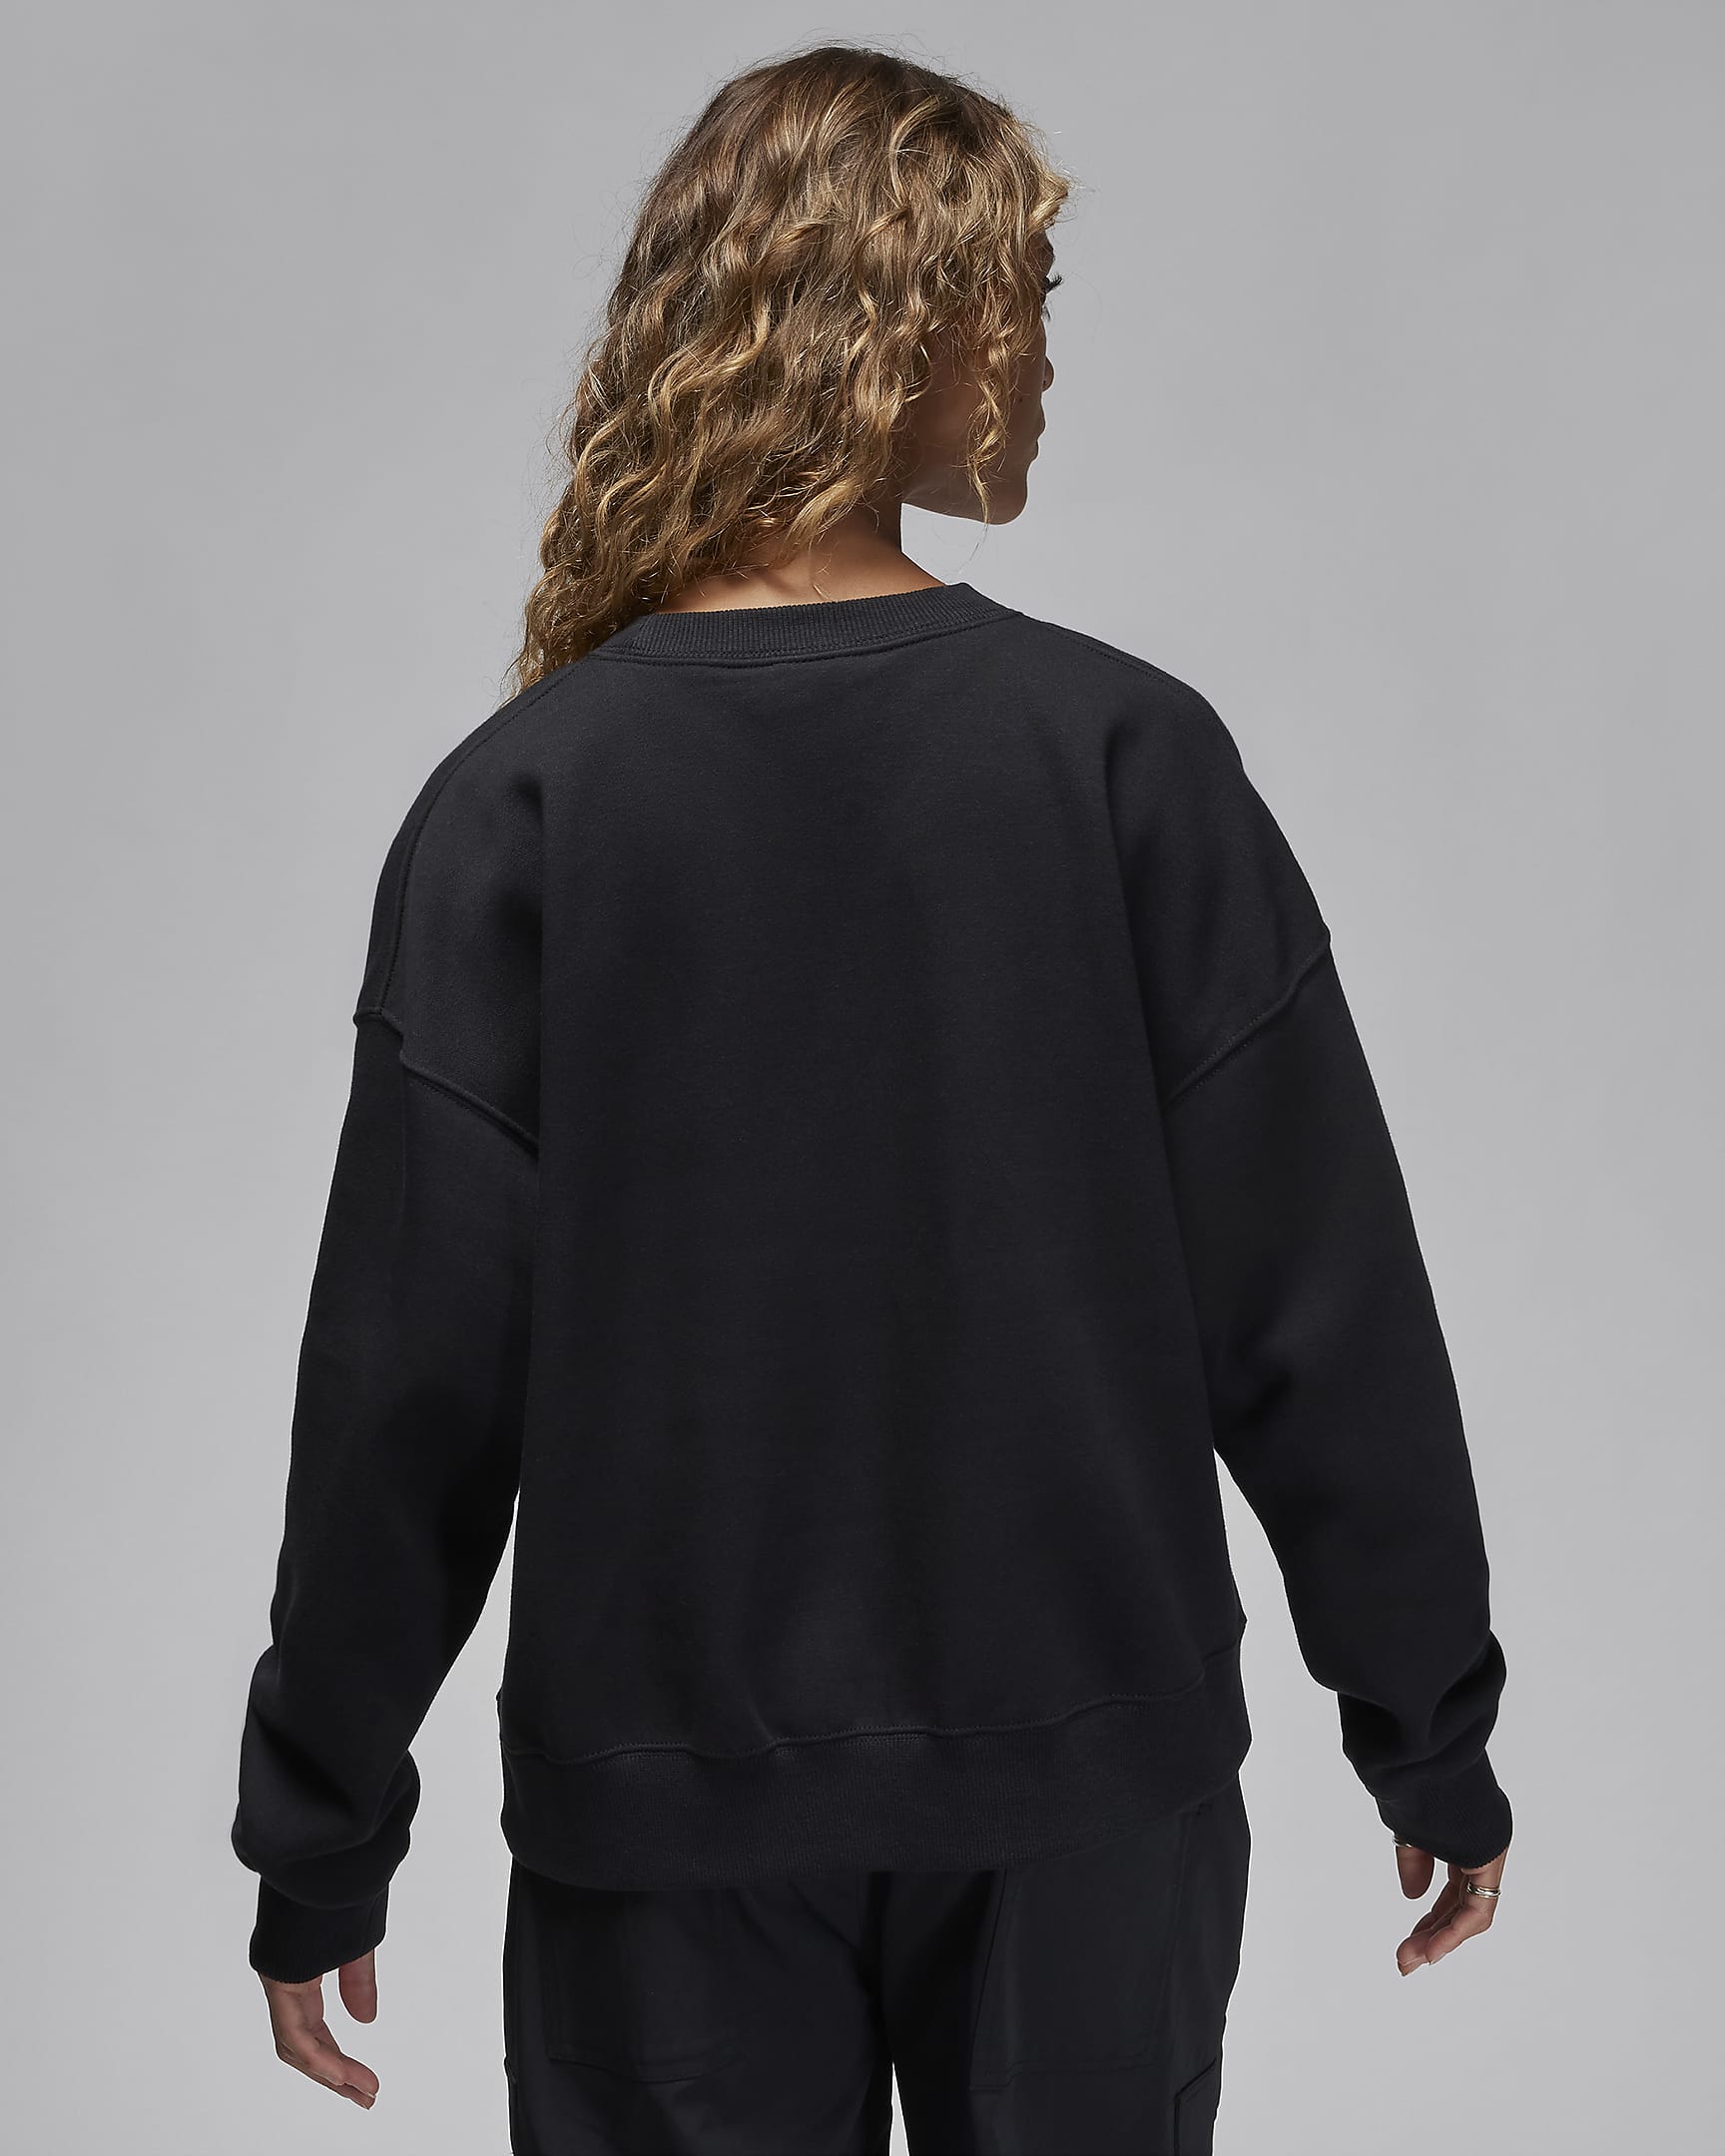 Jordan Brooklyn Fleece Women's Graphic Crew-Neck Sweatshirt. Nike CA